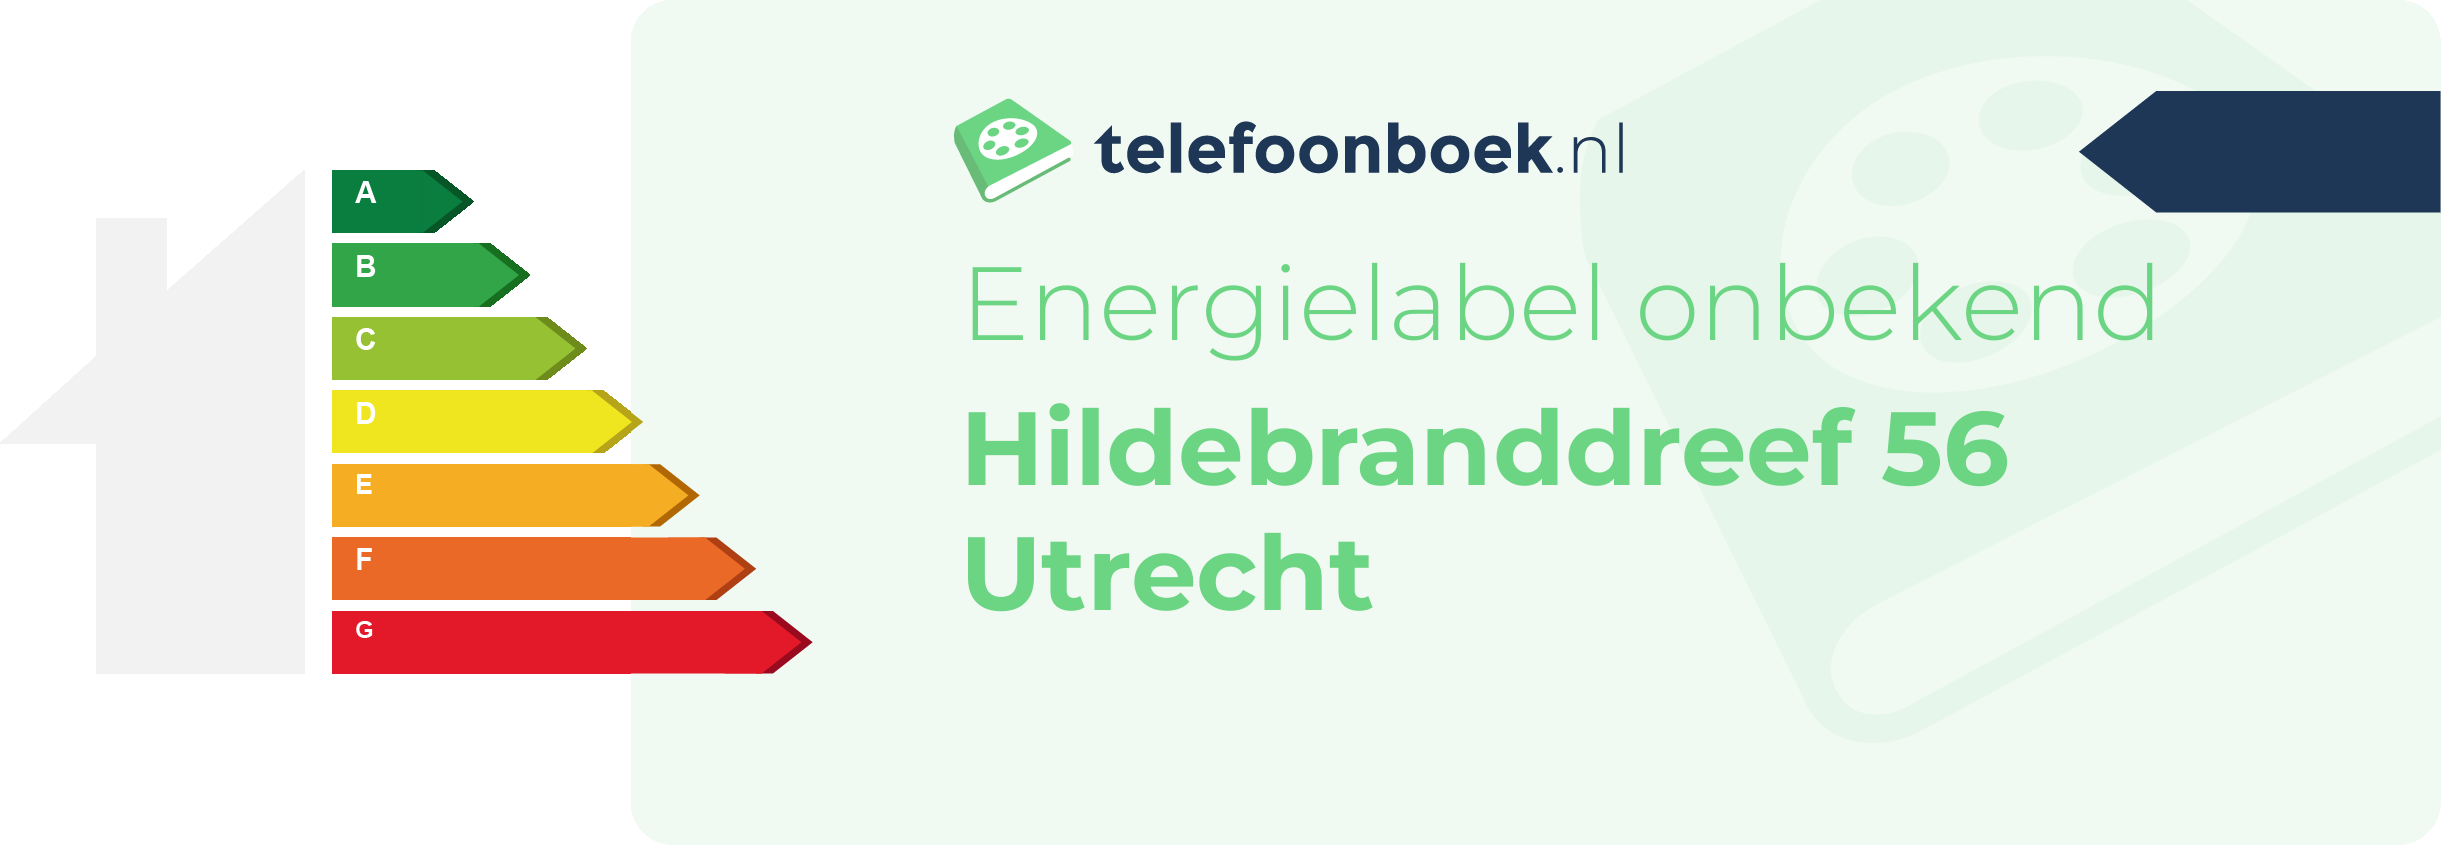 Energielabel Hildebranddreef 56 Utrecht